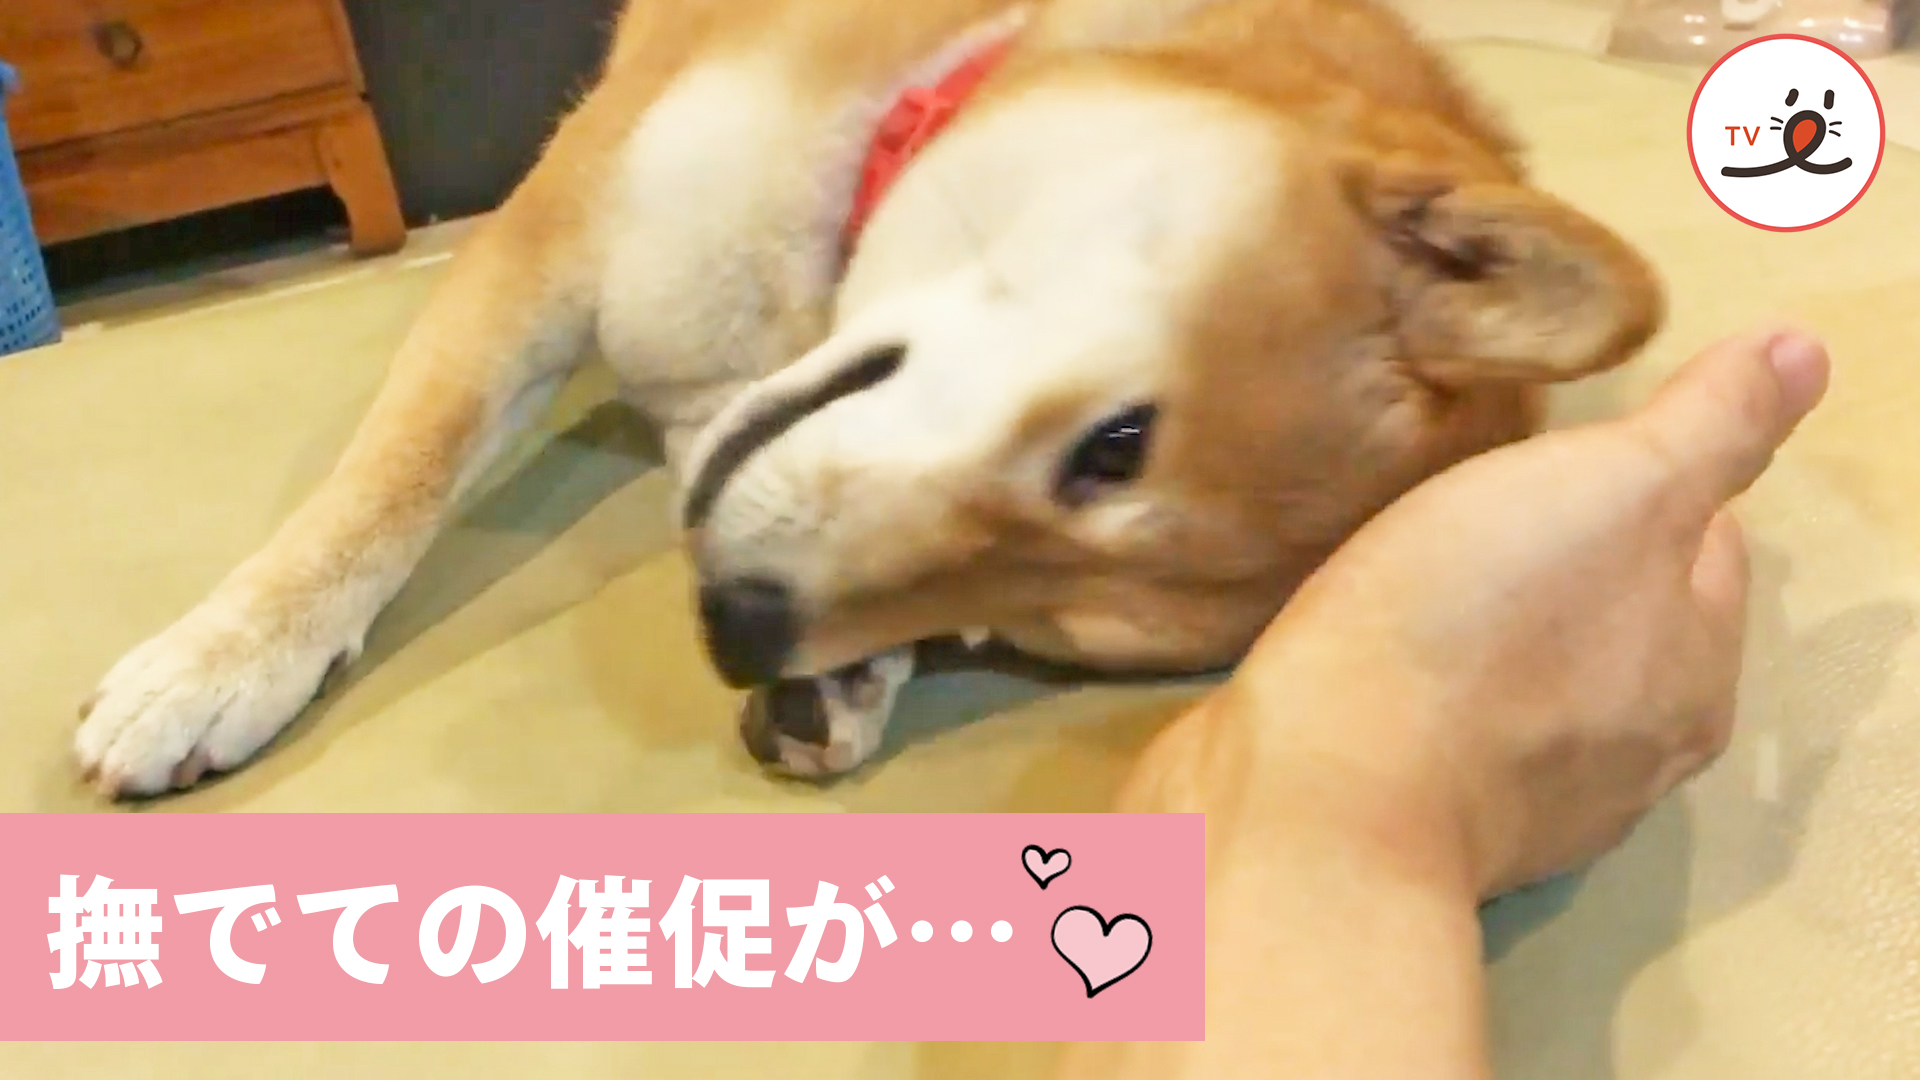 もっとナデナデして 柴犬の要求に逆らえる Peco Tv Yahoo Japan